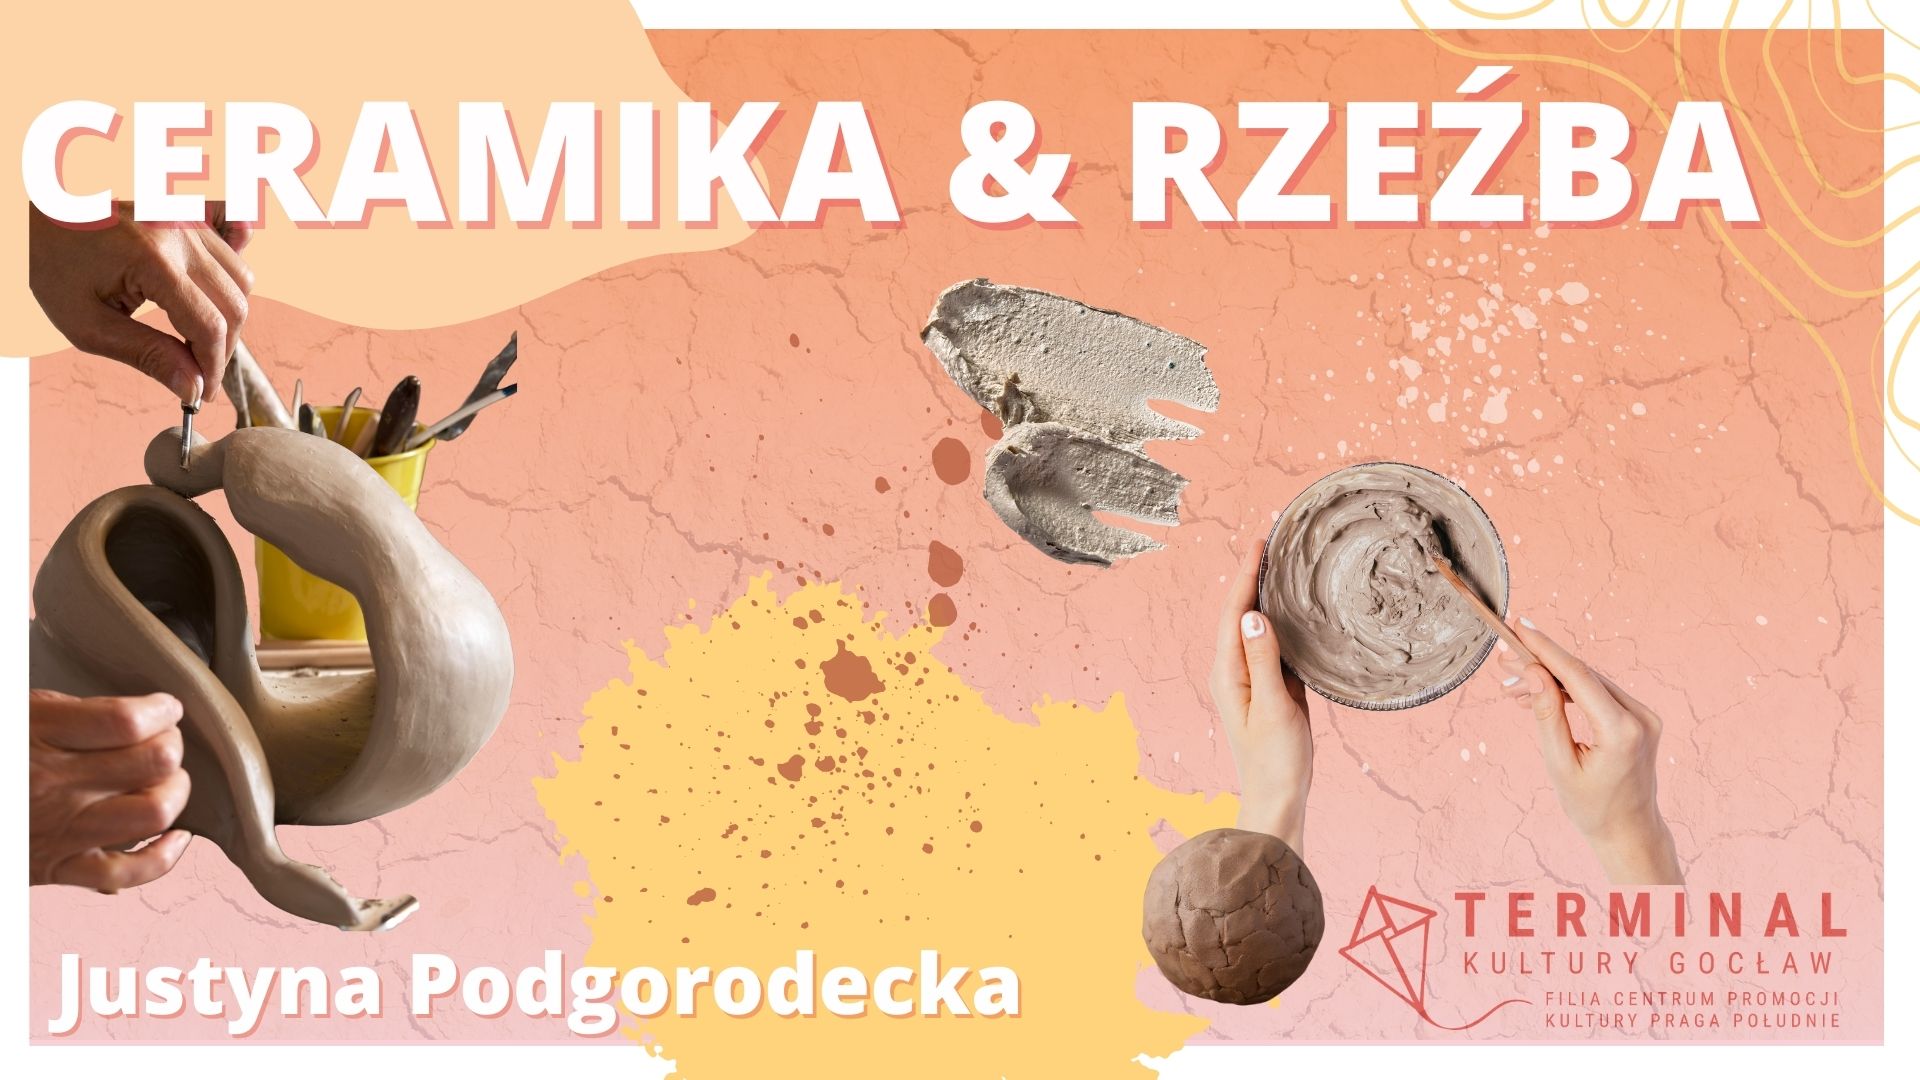 Ceramika & rzeźba - Justyna Podgorodecka